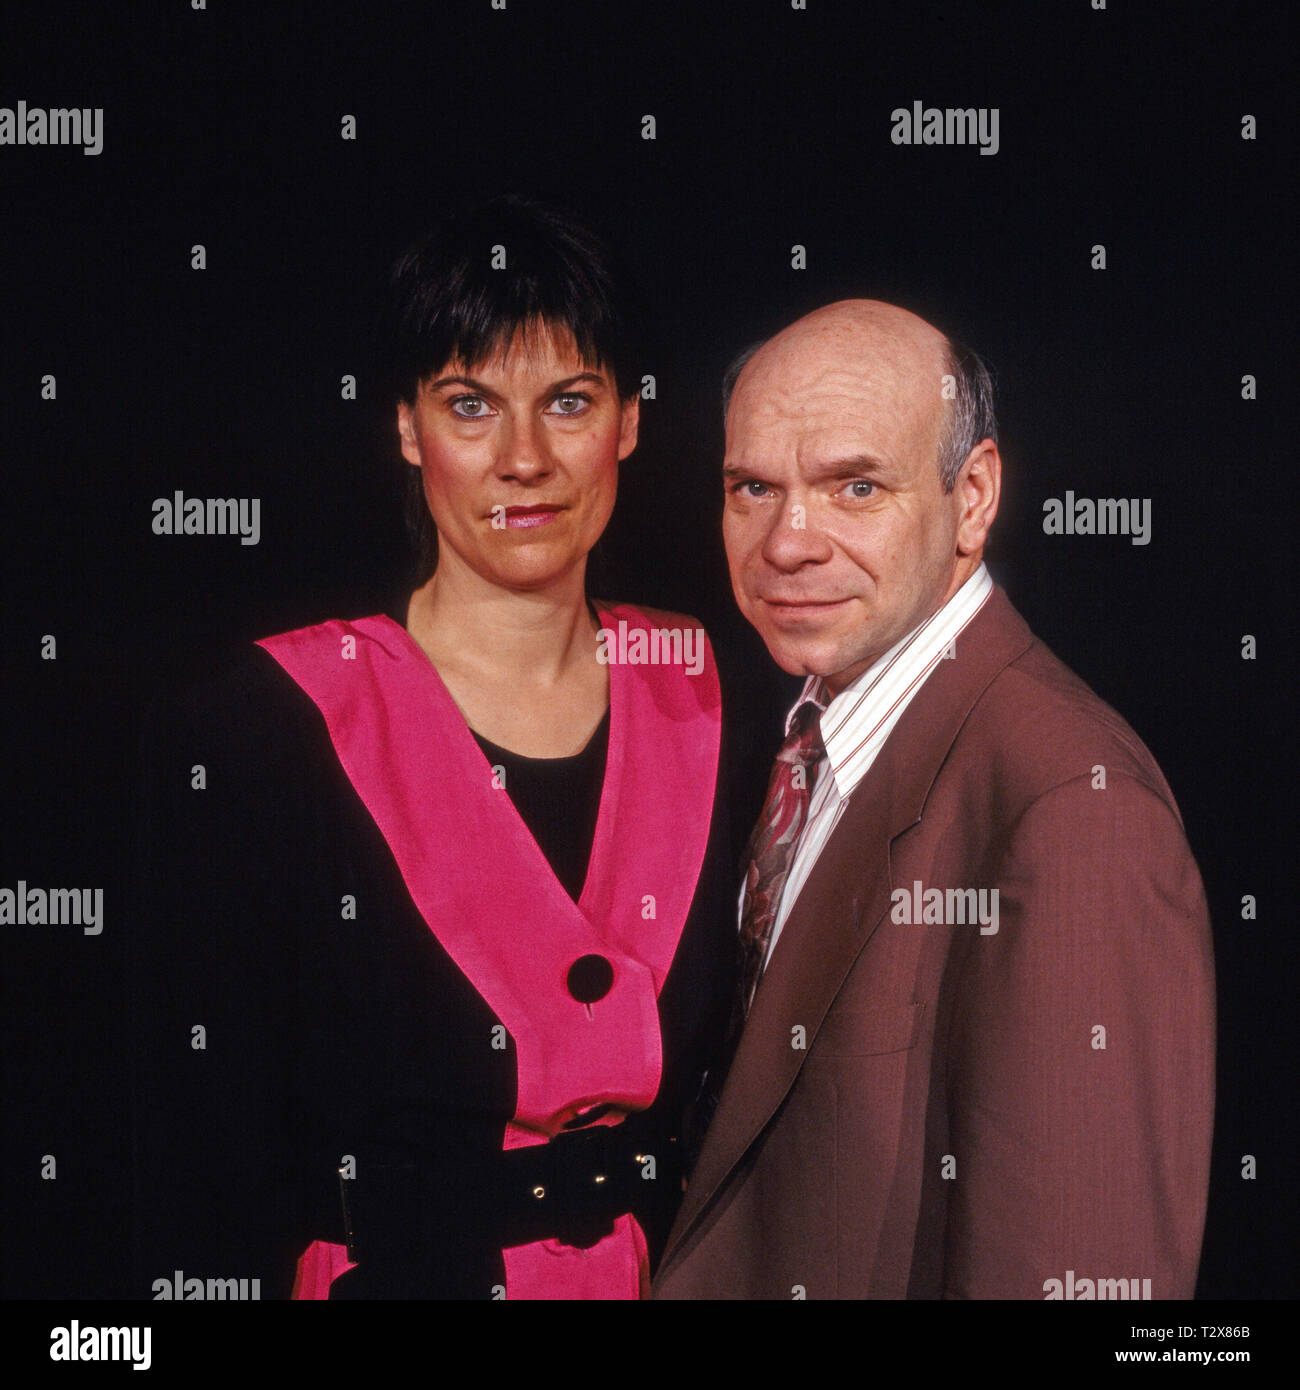 Münchner Lach- und Schießgesellschaft 1992, Programm: "Alle Ächtung', Mitwirkende: Gabi Lodermeier, Hans Jürgen Silberbaum Foto Stock